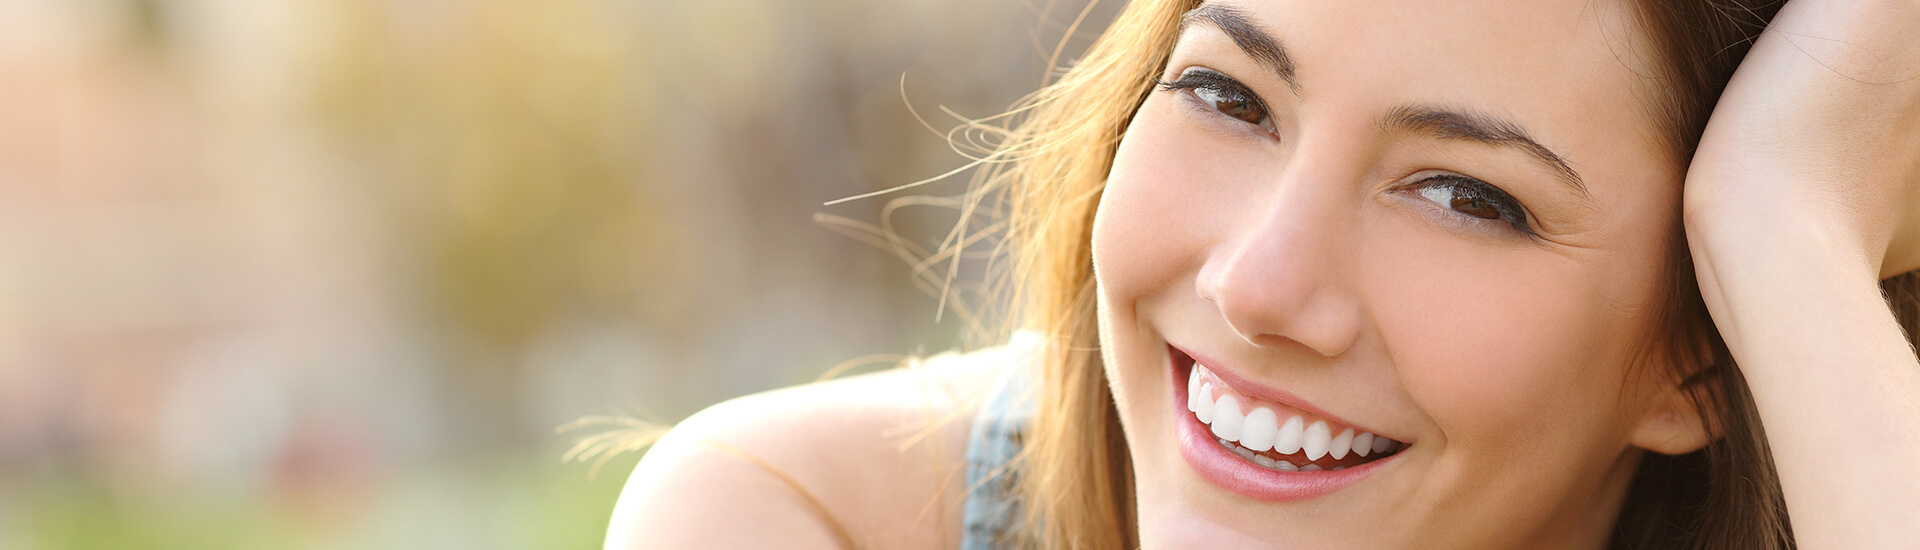 5 Ways to Make Your Smile Sparkle